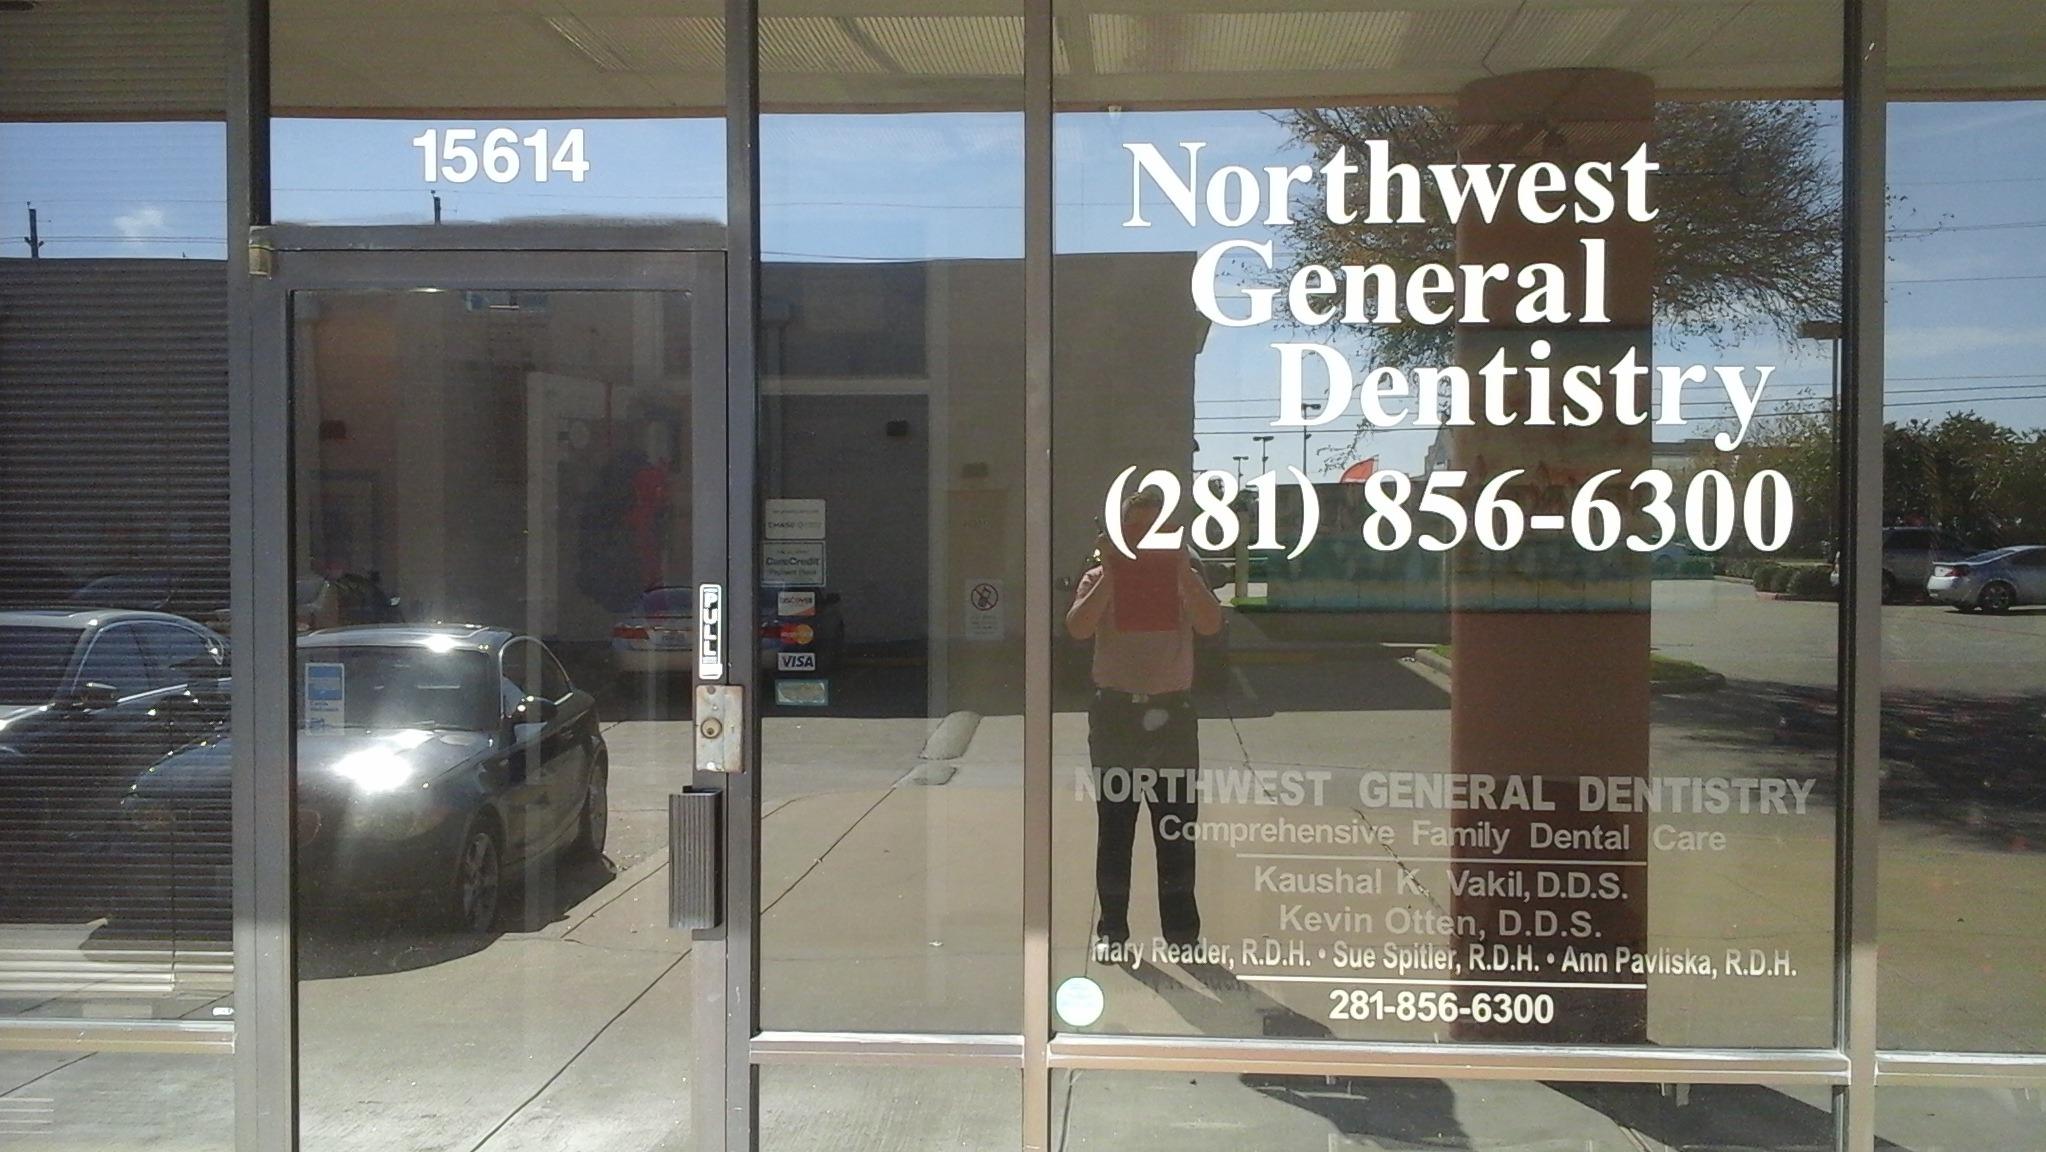 Northwest General Dentistry Houston (281)856-6300